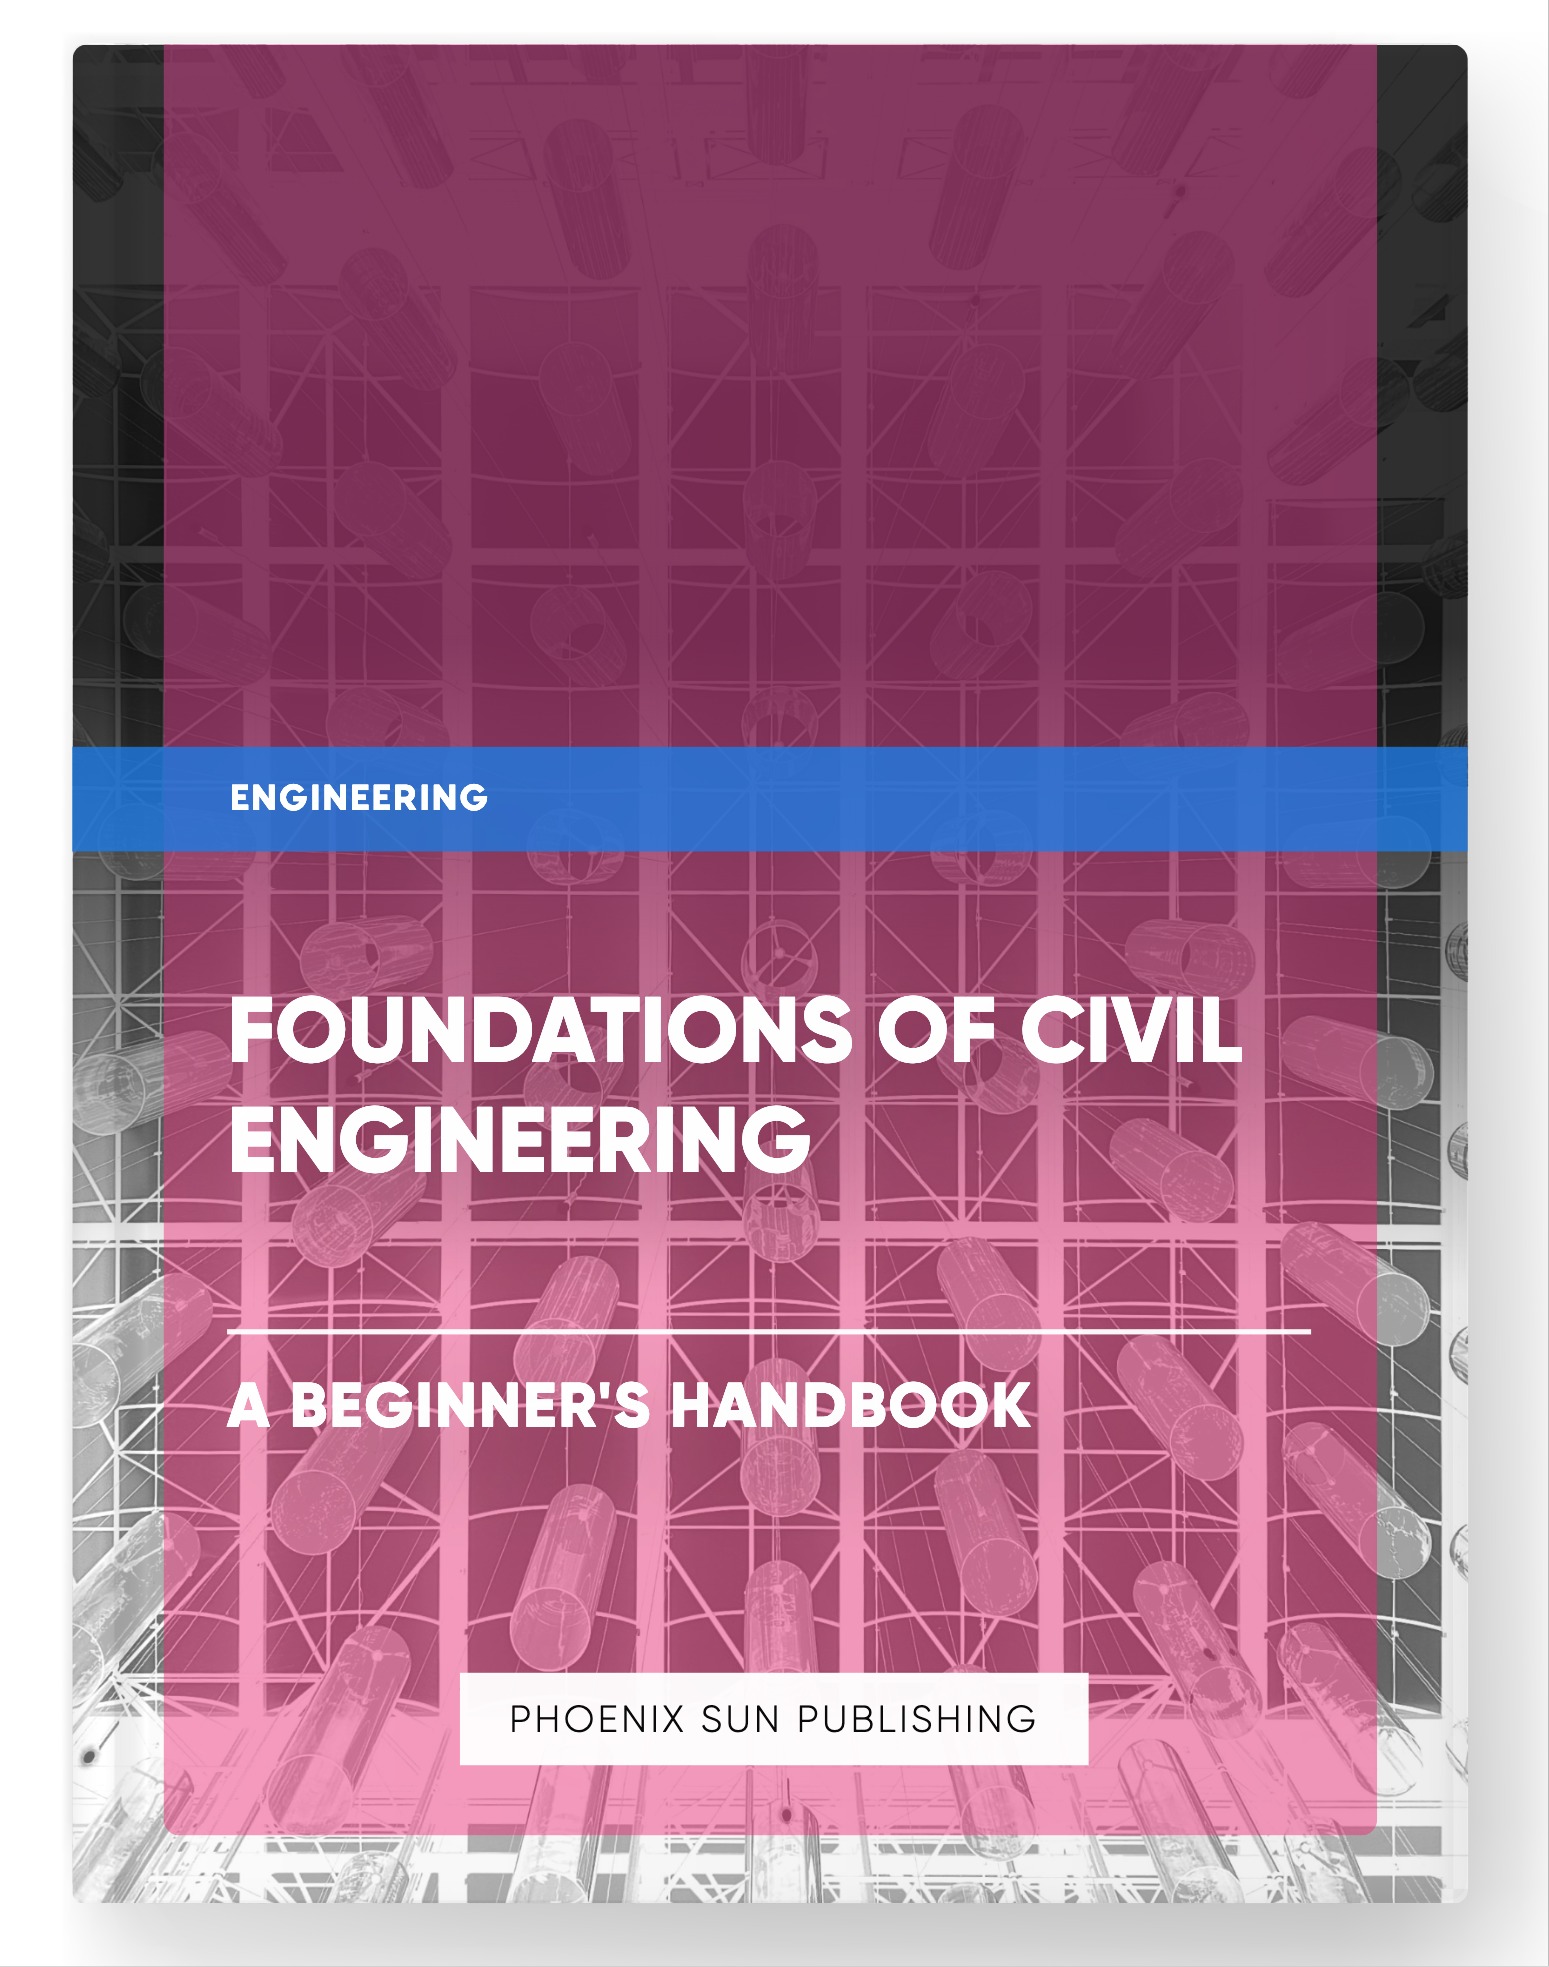 Foundations of Civil Engineering – A Beginner’s Handbook